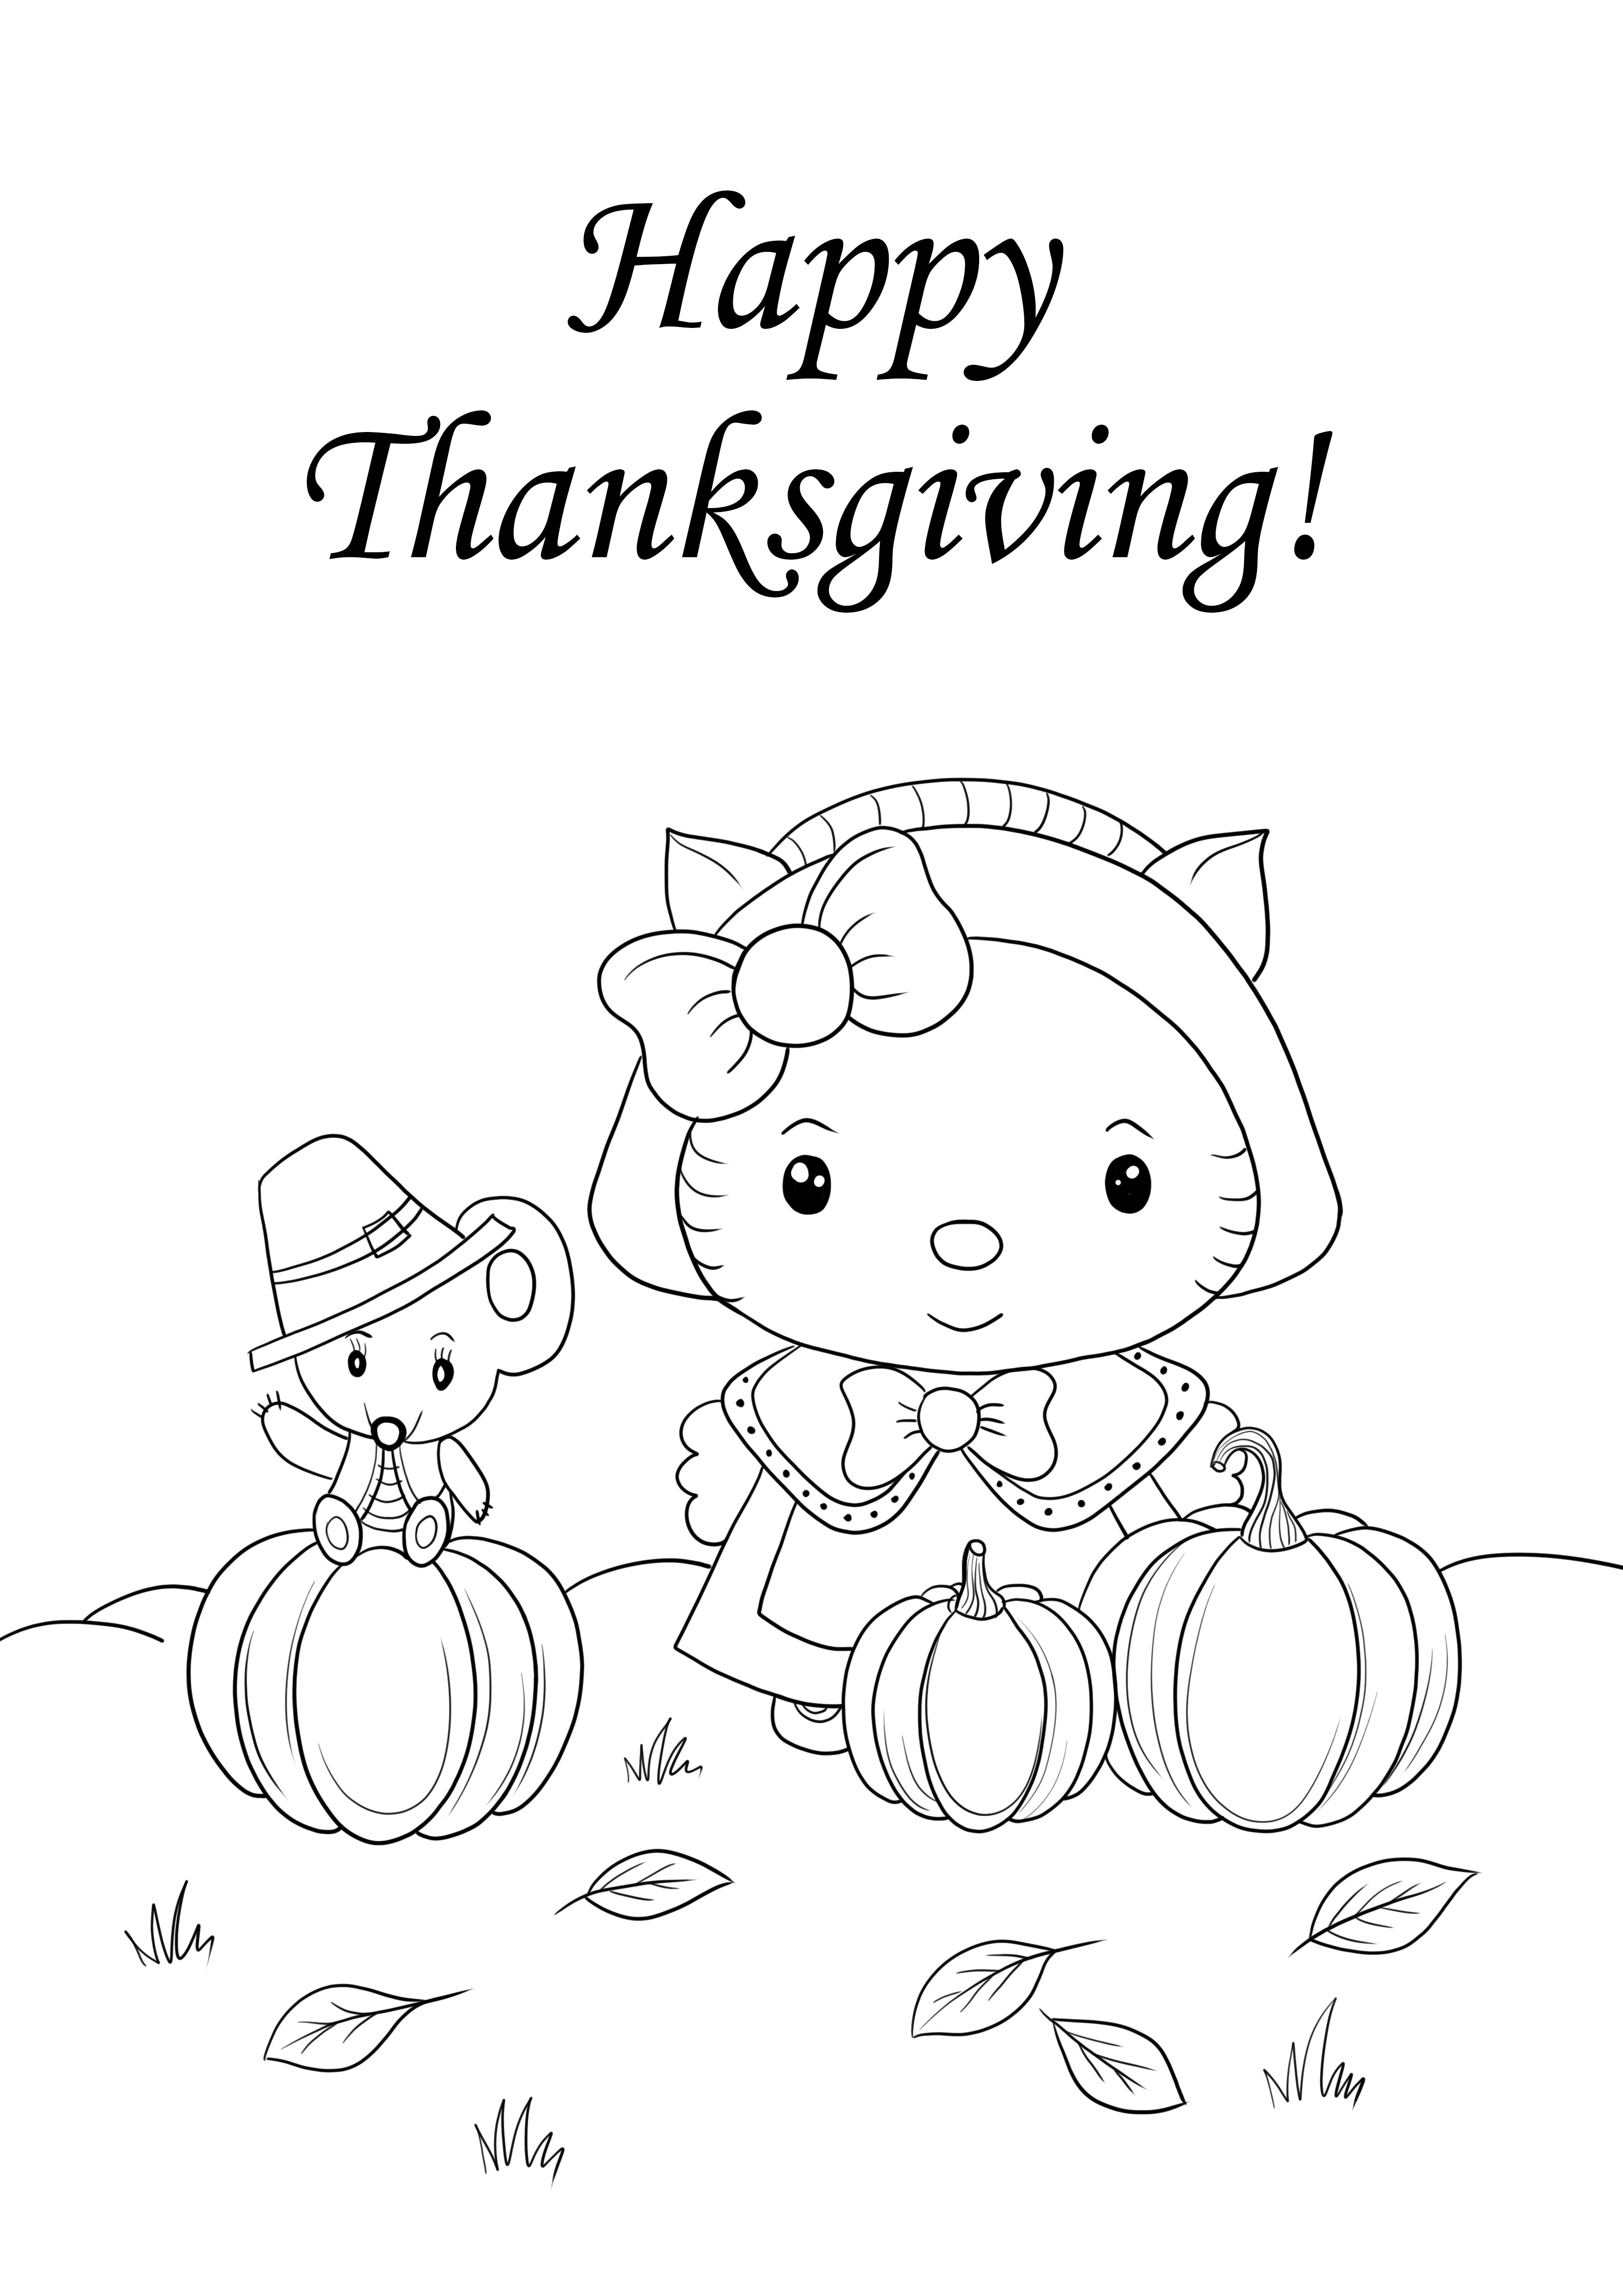 Hello Kitty e Happy Thanksgiving fotos para imprimir e sem cor